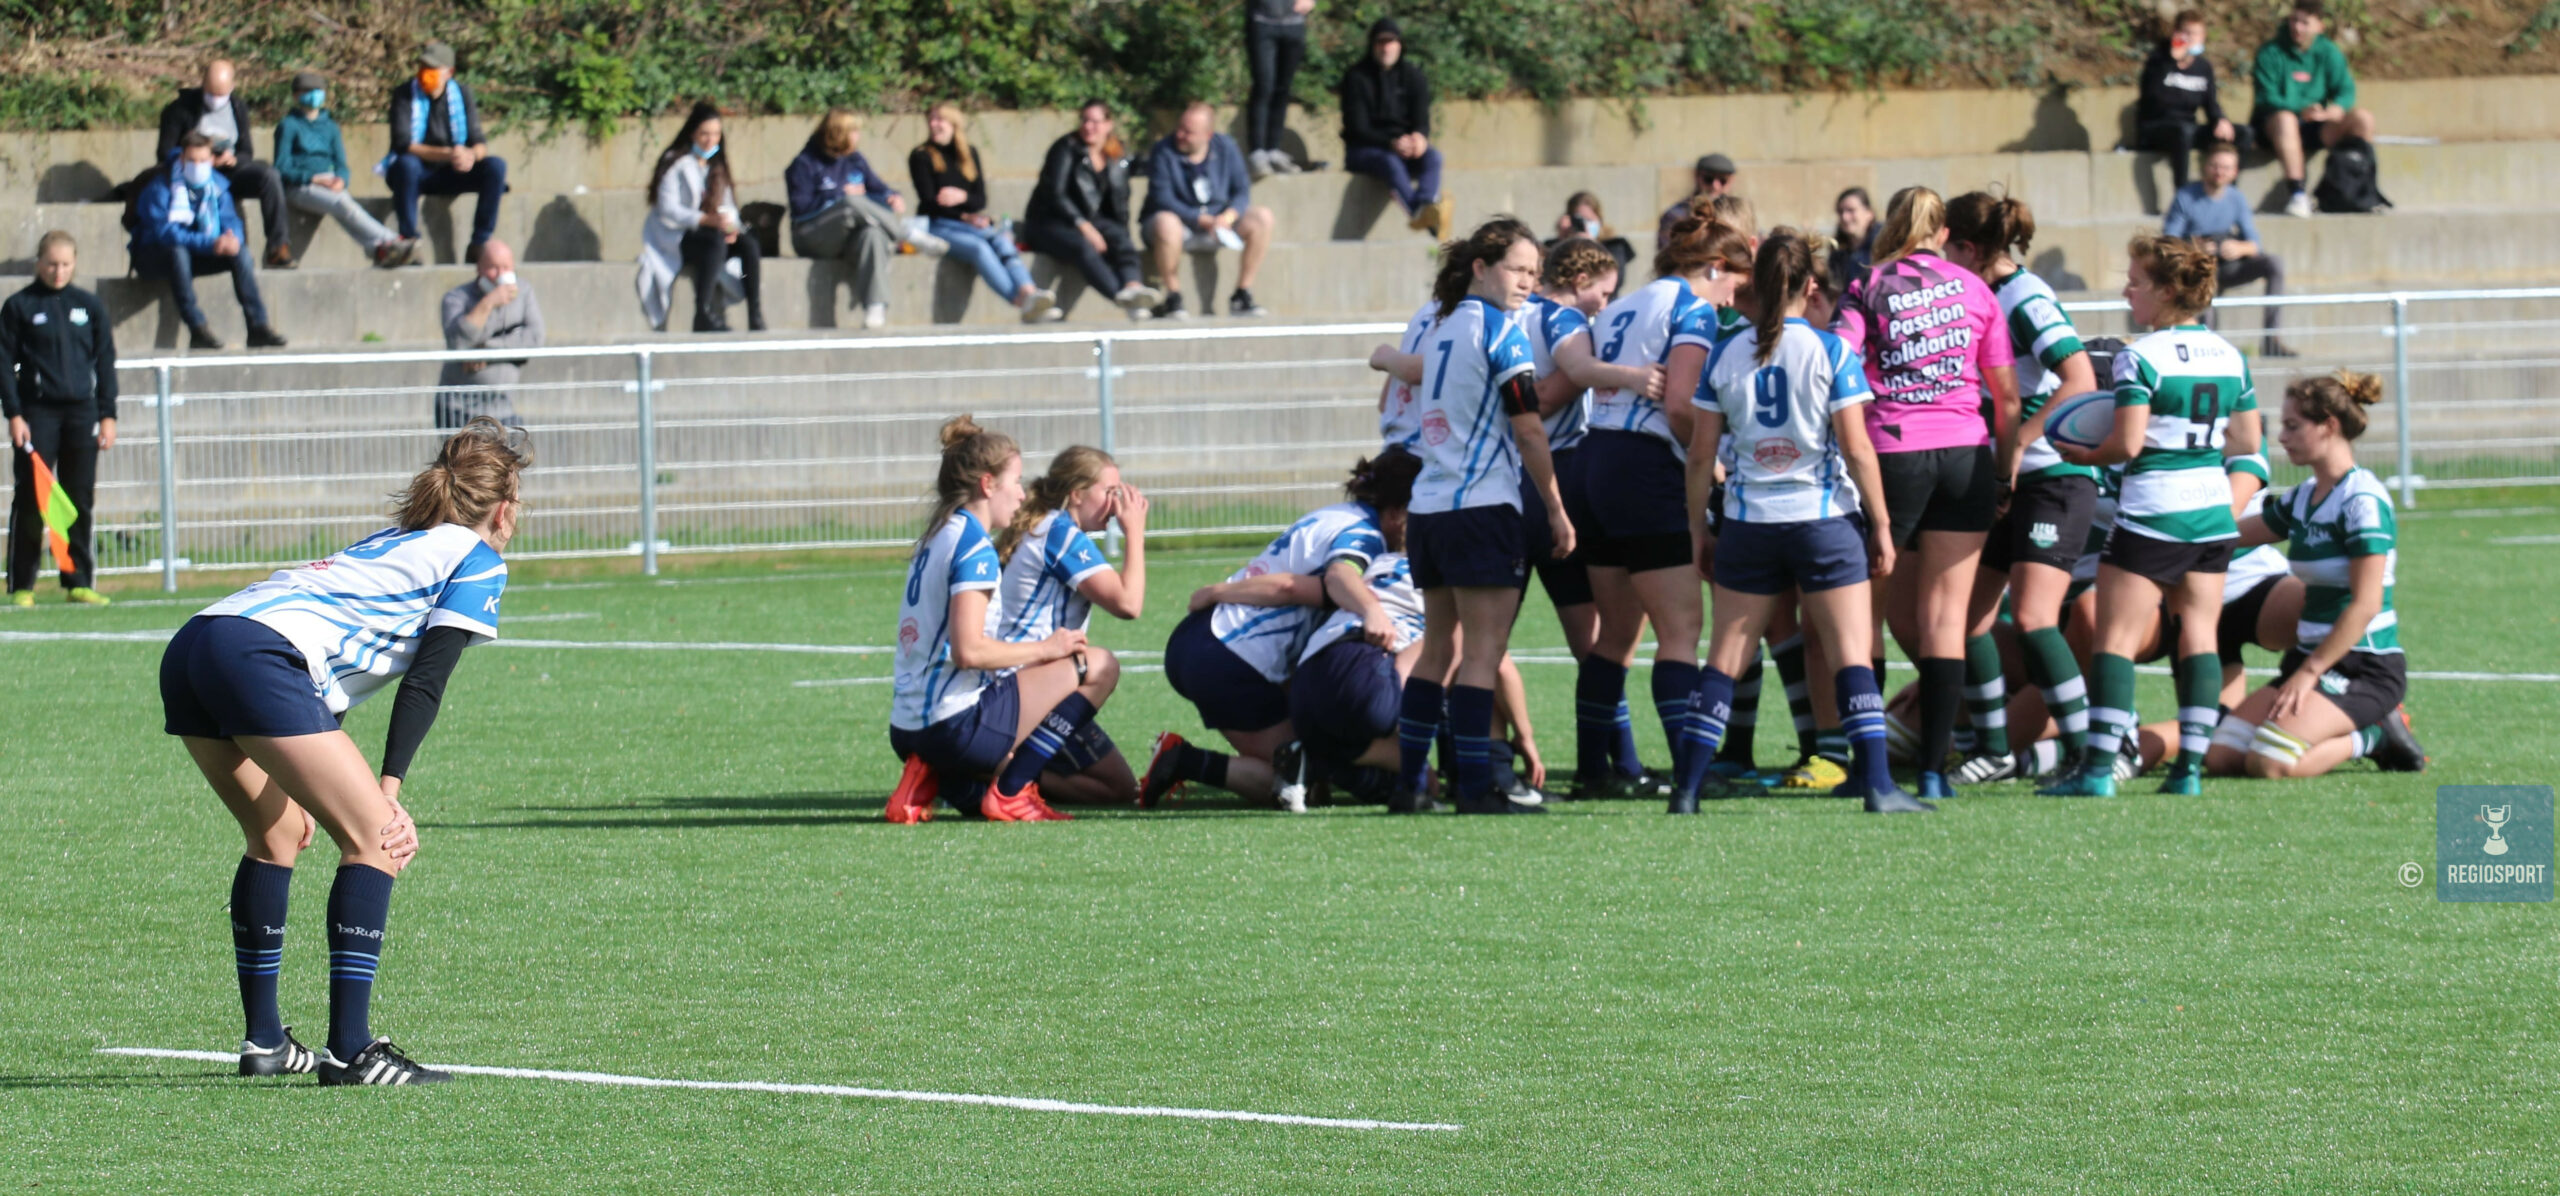 Bij Rugby Club Leuven komt er schot in de vrouwelijke jeugd